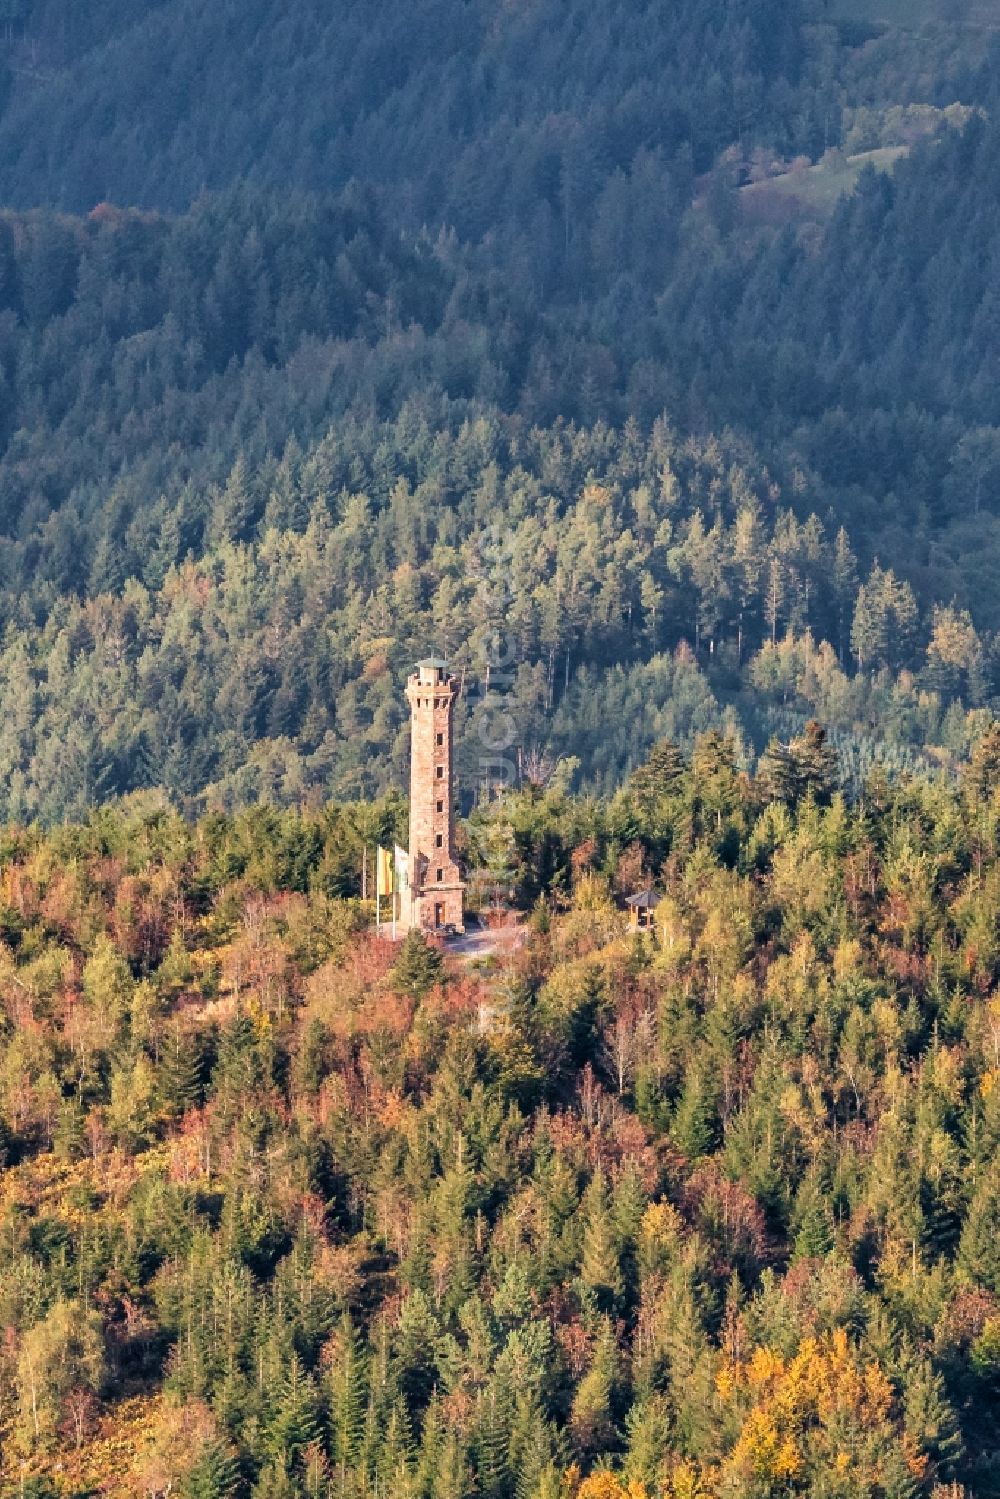 Luftbild Nordrach - Bauwerk des Aussichtsturmes Moosturm in Nordrach im Bundesland Baden-Württemberg, Deutschland